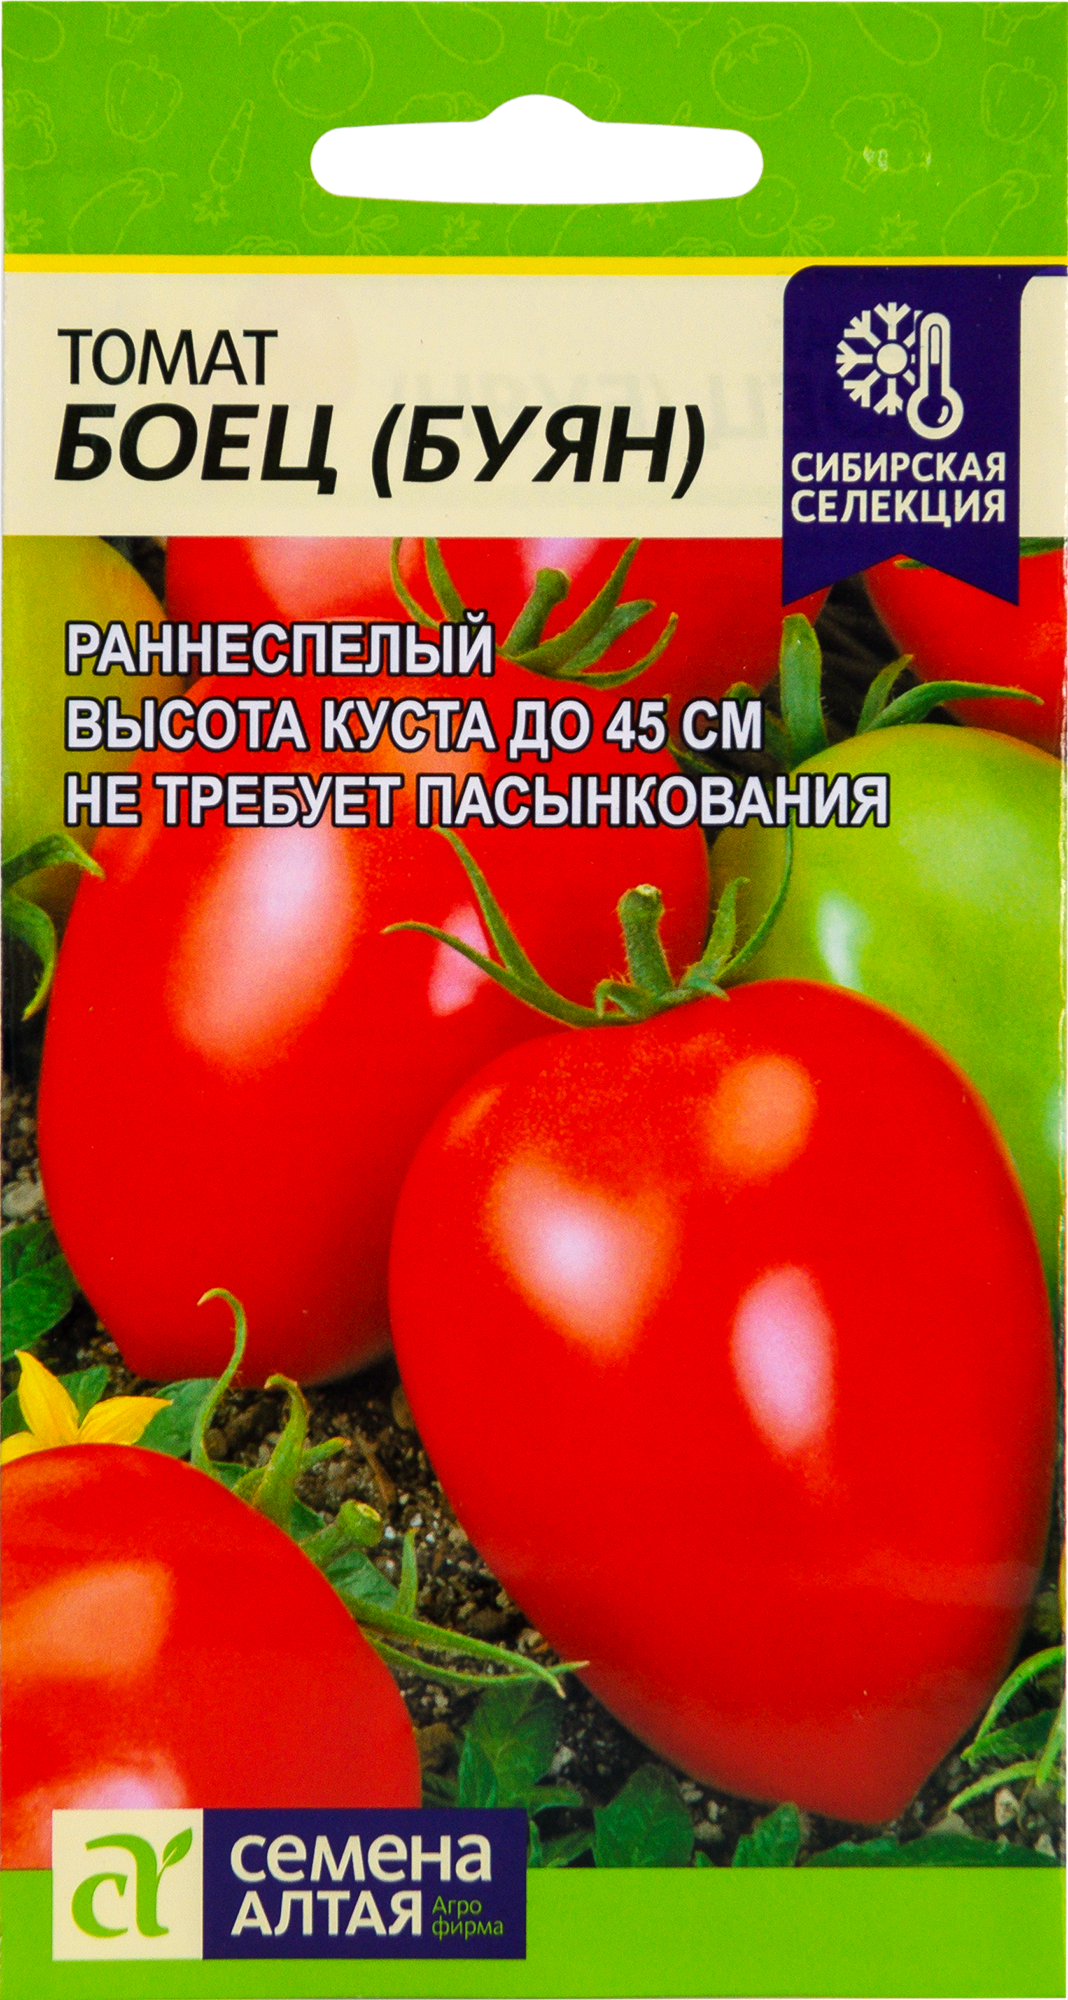 Семена Томат Наша селекция «Буян боец», 0.05 г в Кемерове – купить понизкой цене в интернет-магазине Леруа Мерлен